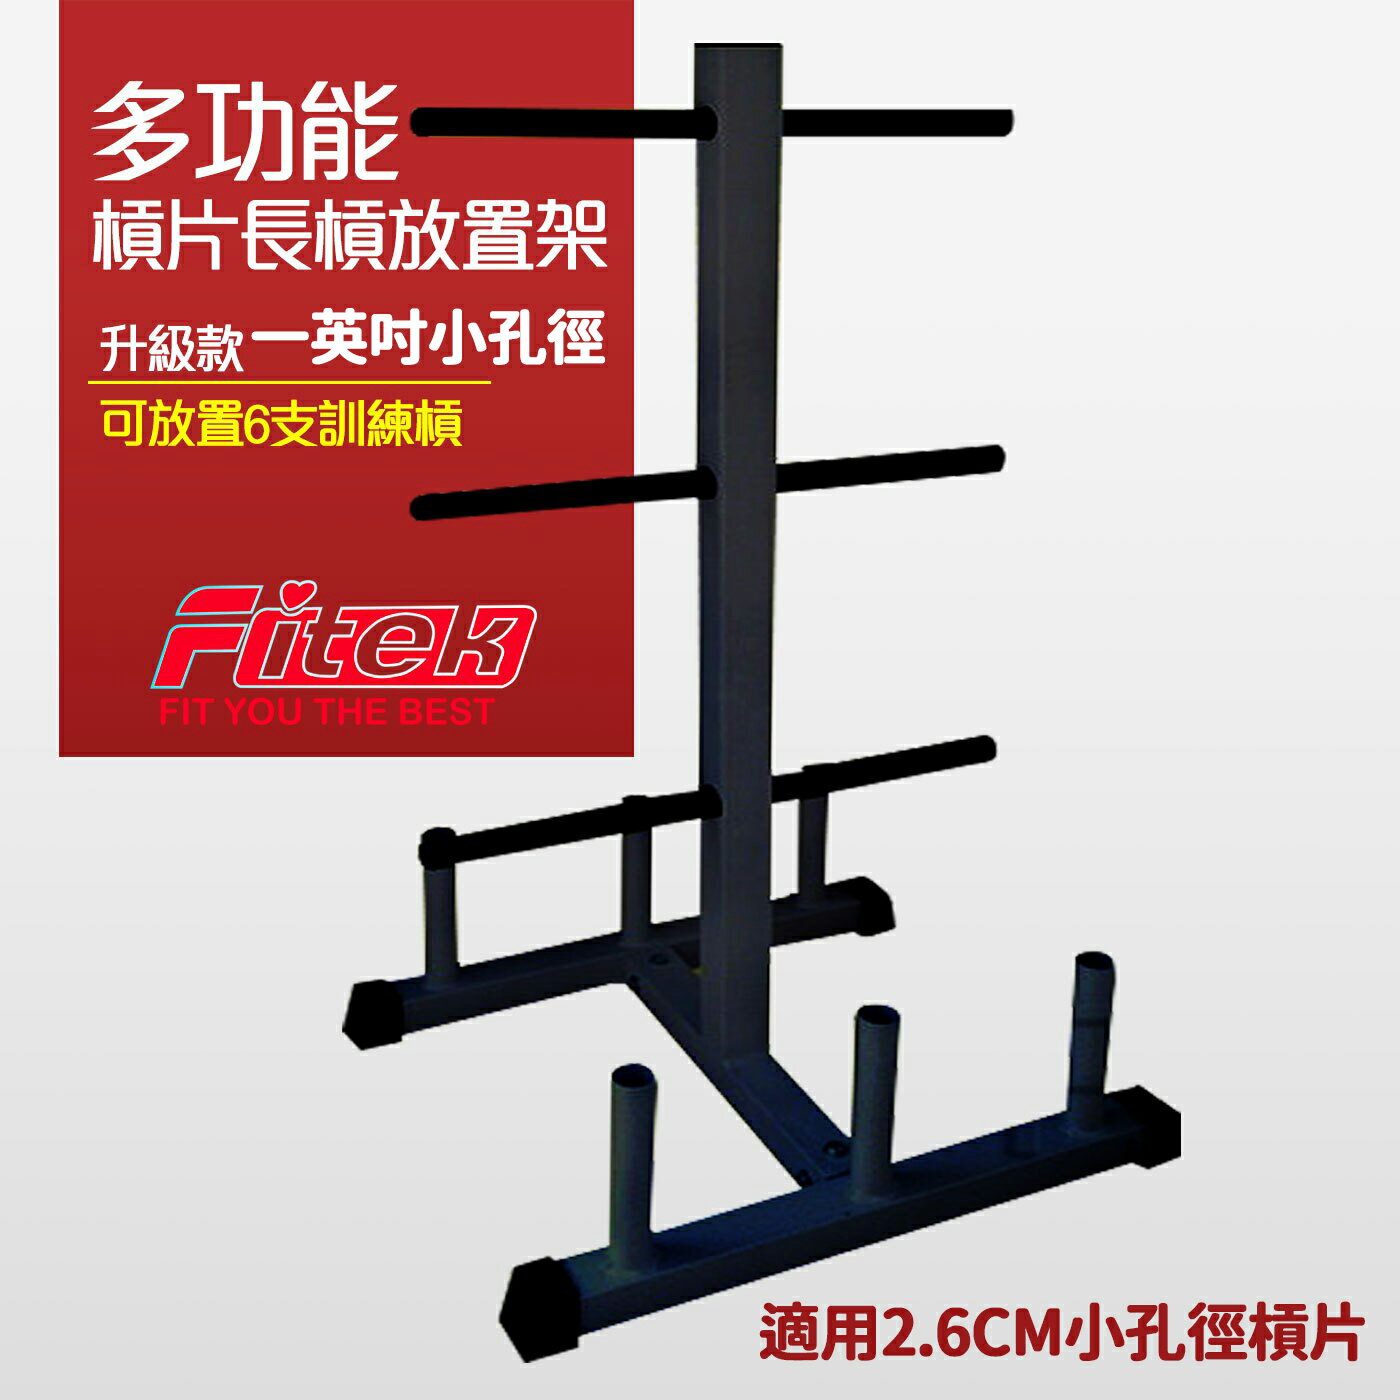 槓片架(小孔徑一英吋) 槓鈴架 可放短槓、長桿或彎曲槓 6支 節省空間、簡潔美觀㊣台灣製【Fitek健身網】